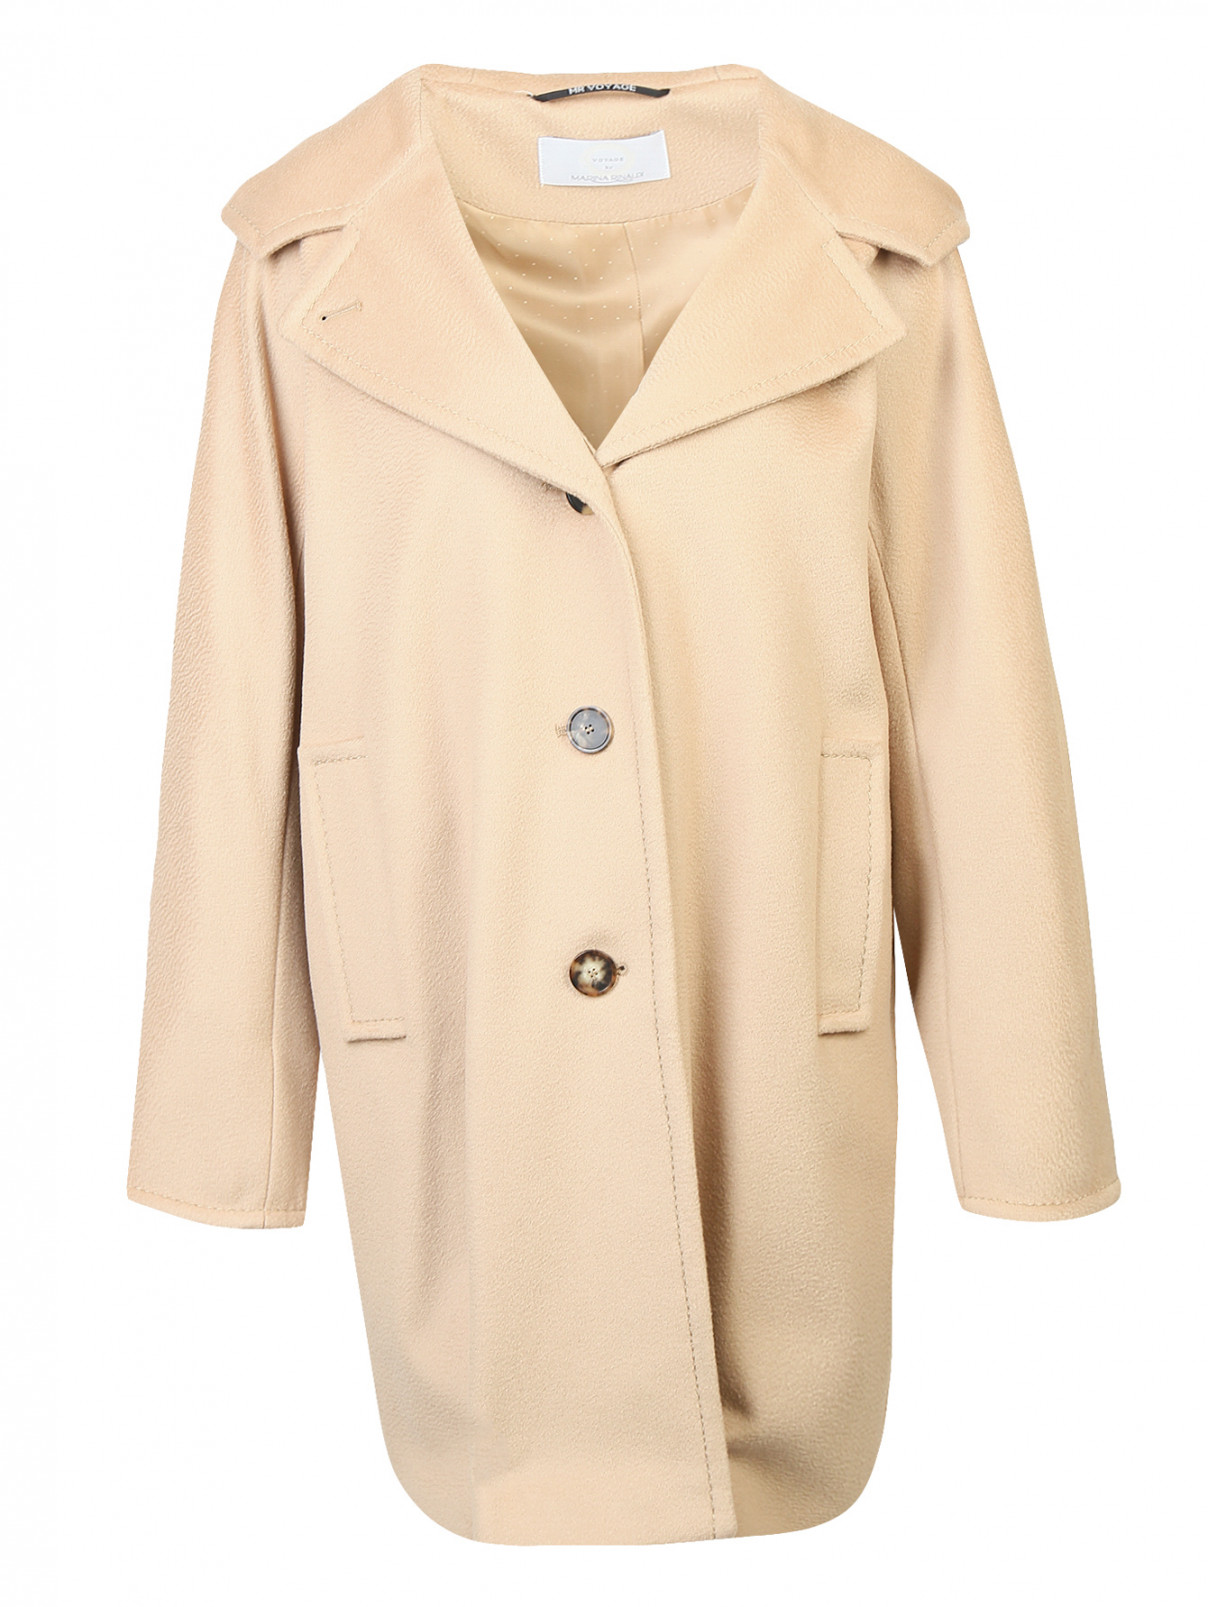 Пальто из шерсти с капюшоном Marina Rinaldi  –  Общий вид  – Цвет:  Бежевый